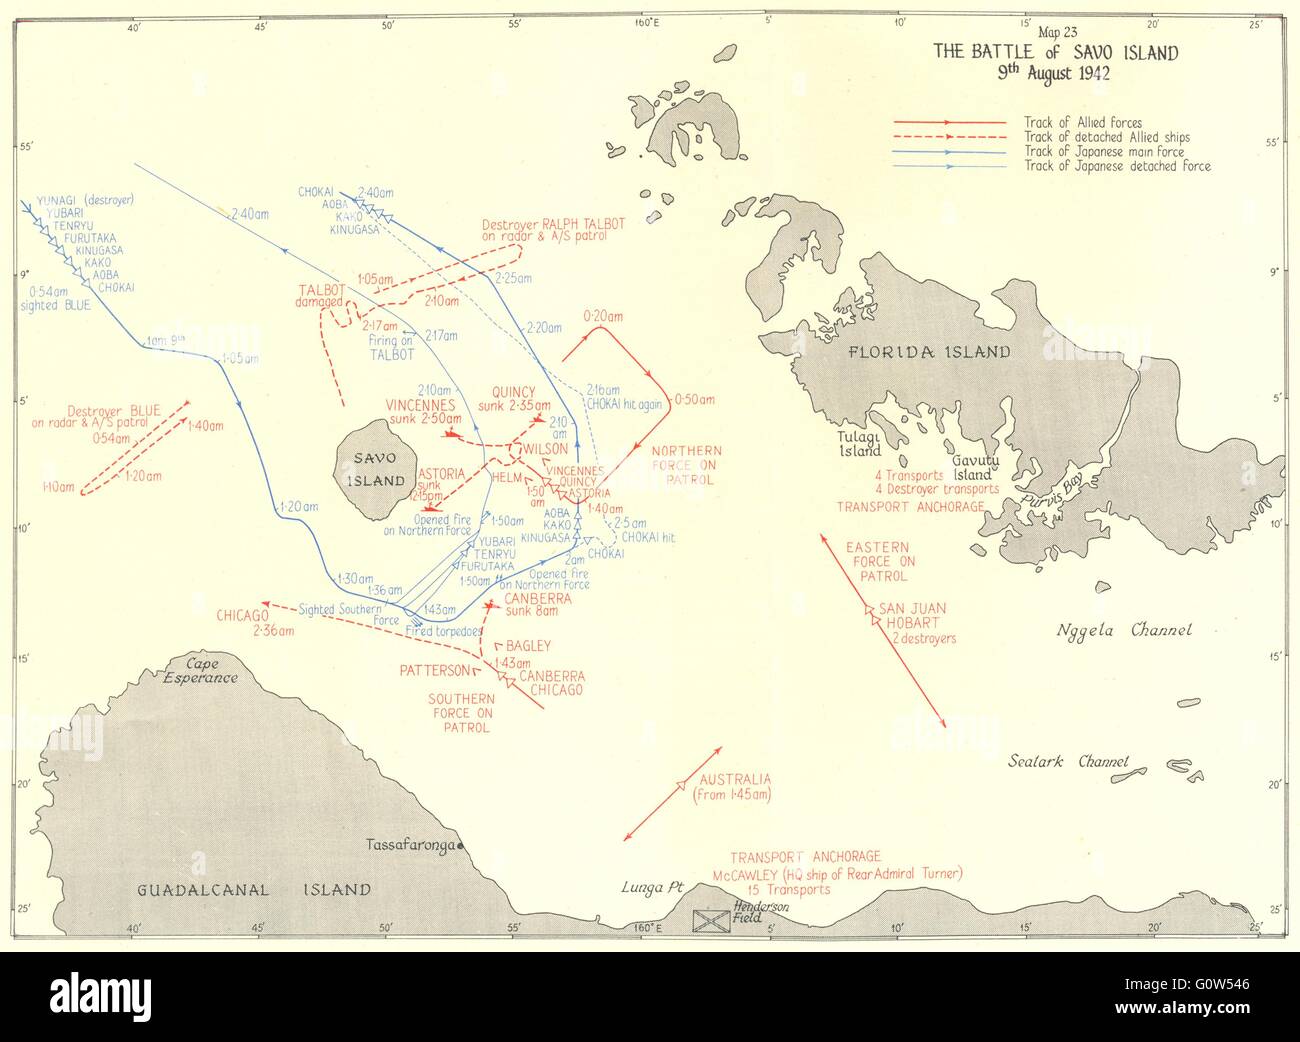 Océano Pacífico: La Batalla de Savo Island el 9 de agosto de 1942, 1956 vintage mapa Foto de stock